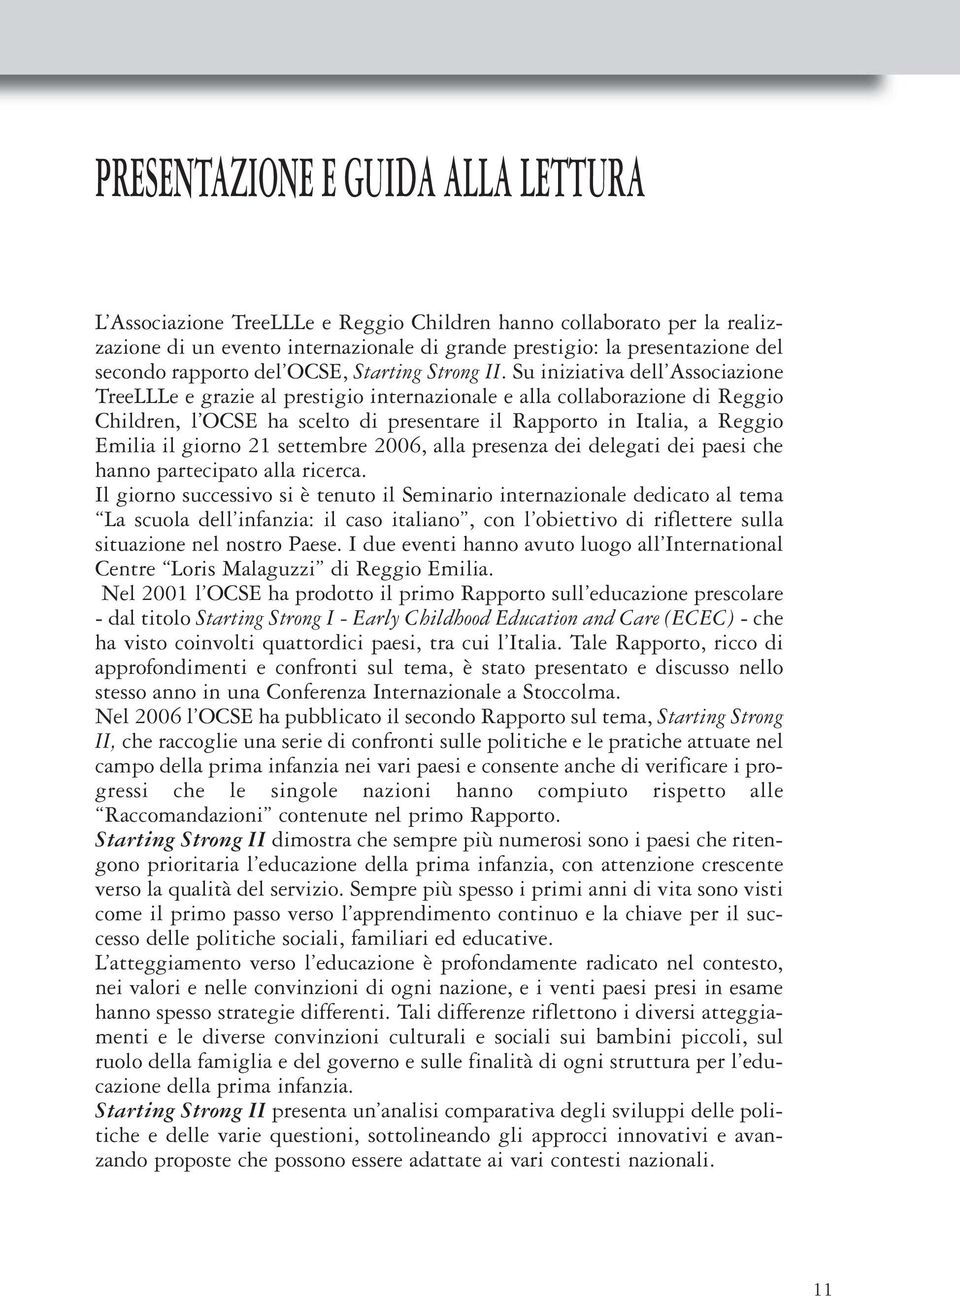 Su iniziativa dell Associazione TreeLLLe e grazie al prestigio internazionale e alla collaborazione di Reggio Children, l OCSE ha scelto di presentare il Rapporto in Italia, a Reggio Emilia il giorno